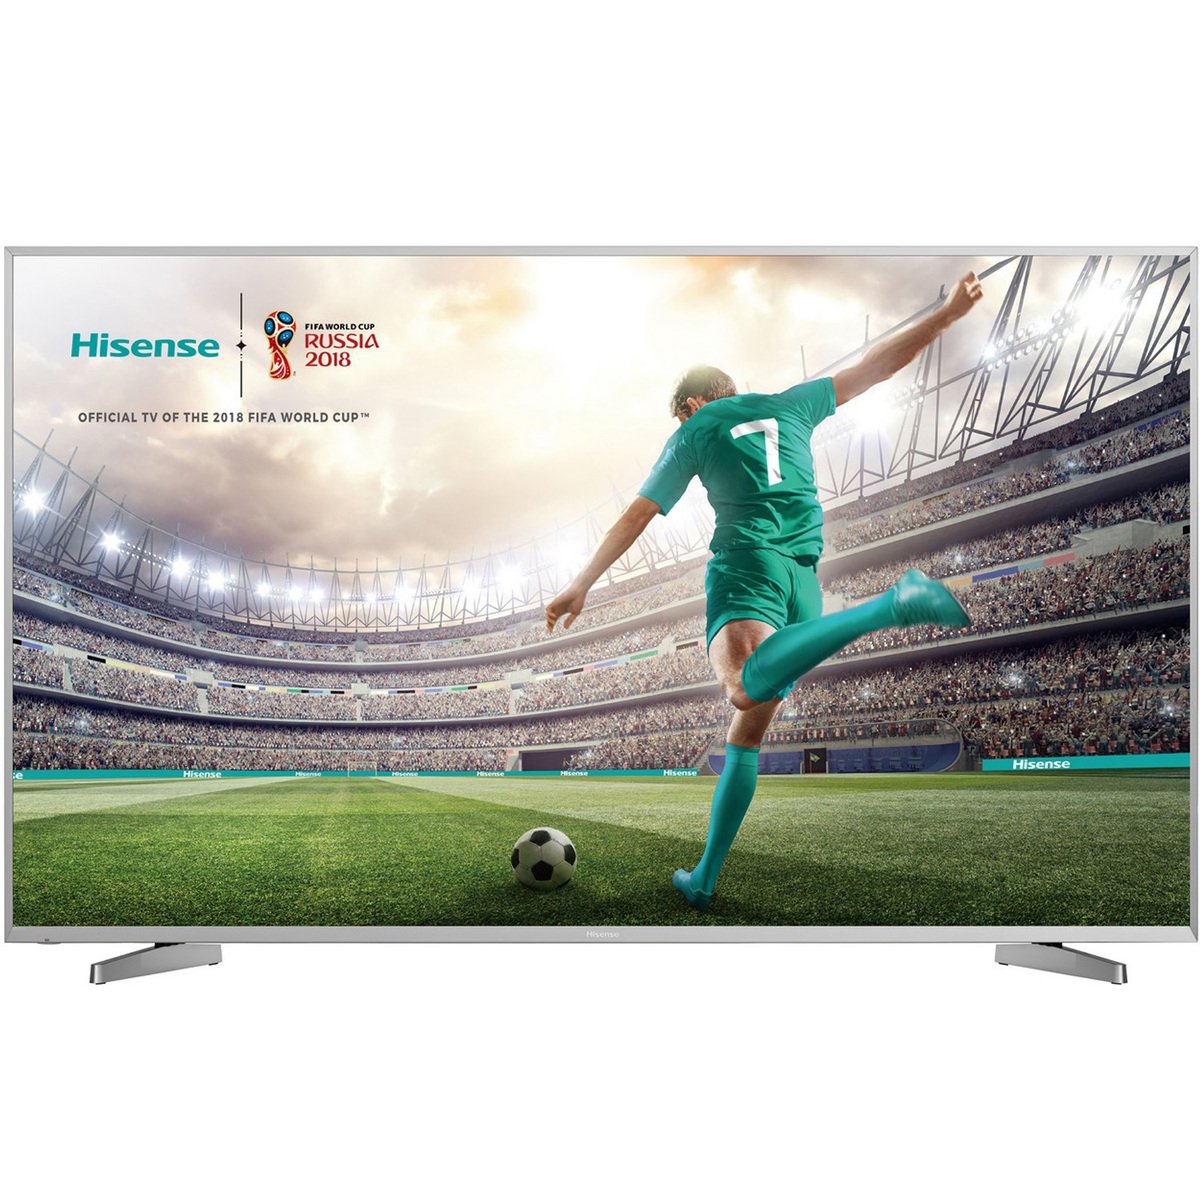 Hisense 4KUltra HD Smart LED TV 75A6800UWG 75inch